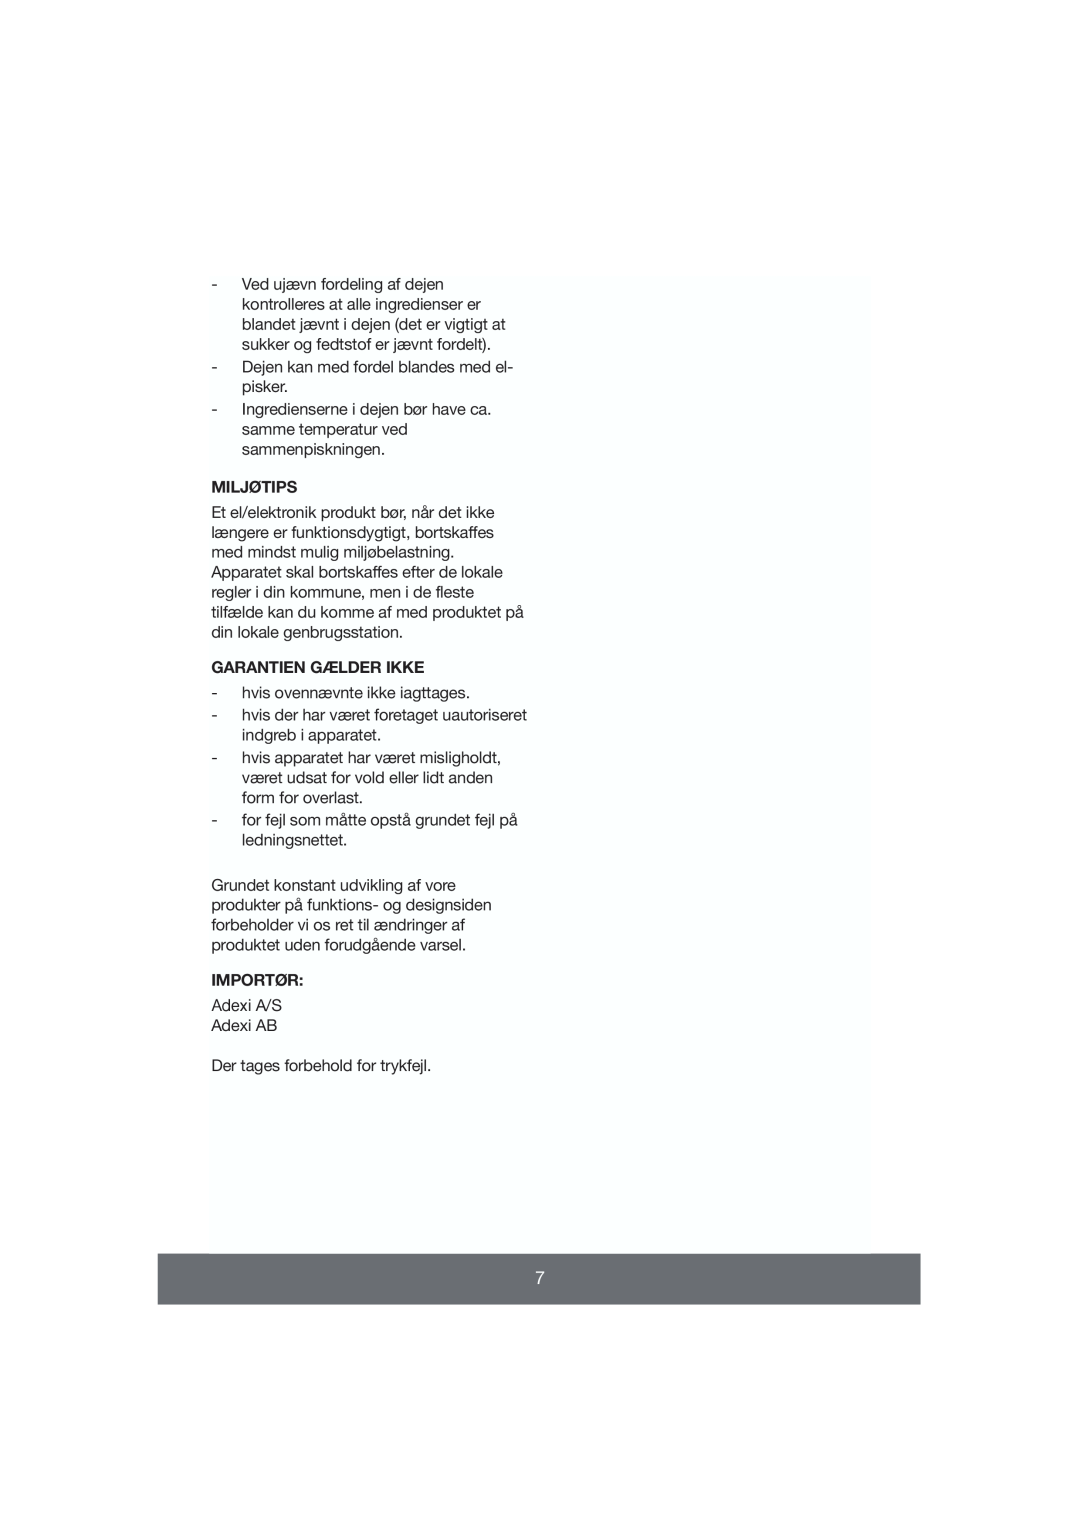 Melissa 643-009 manual Miljøtips, Garantien Gælder Ikke, Importør 